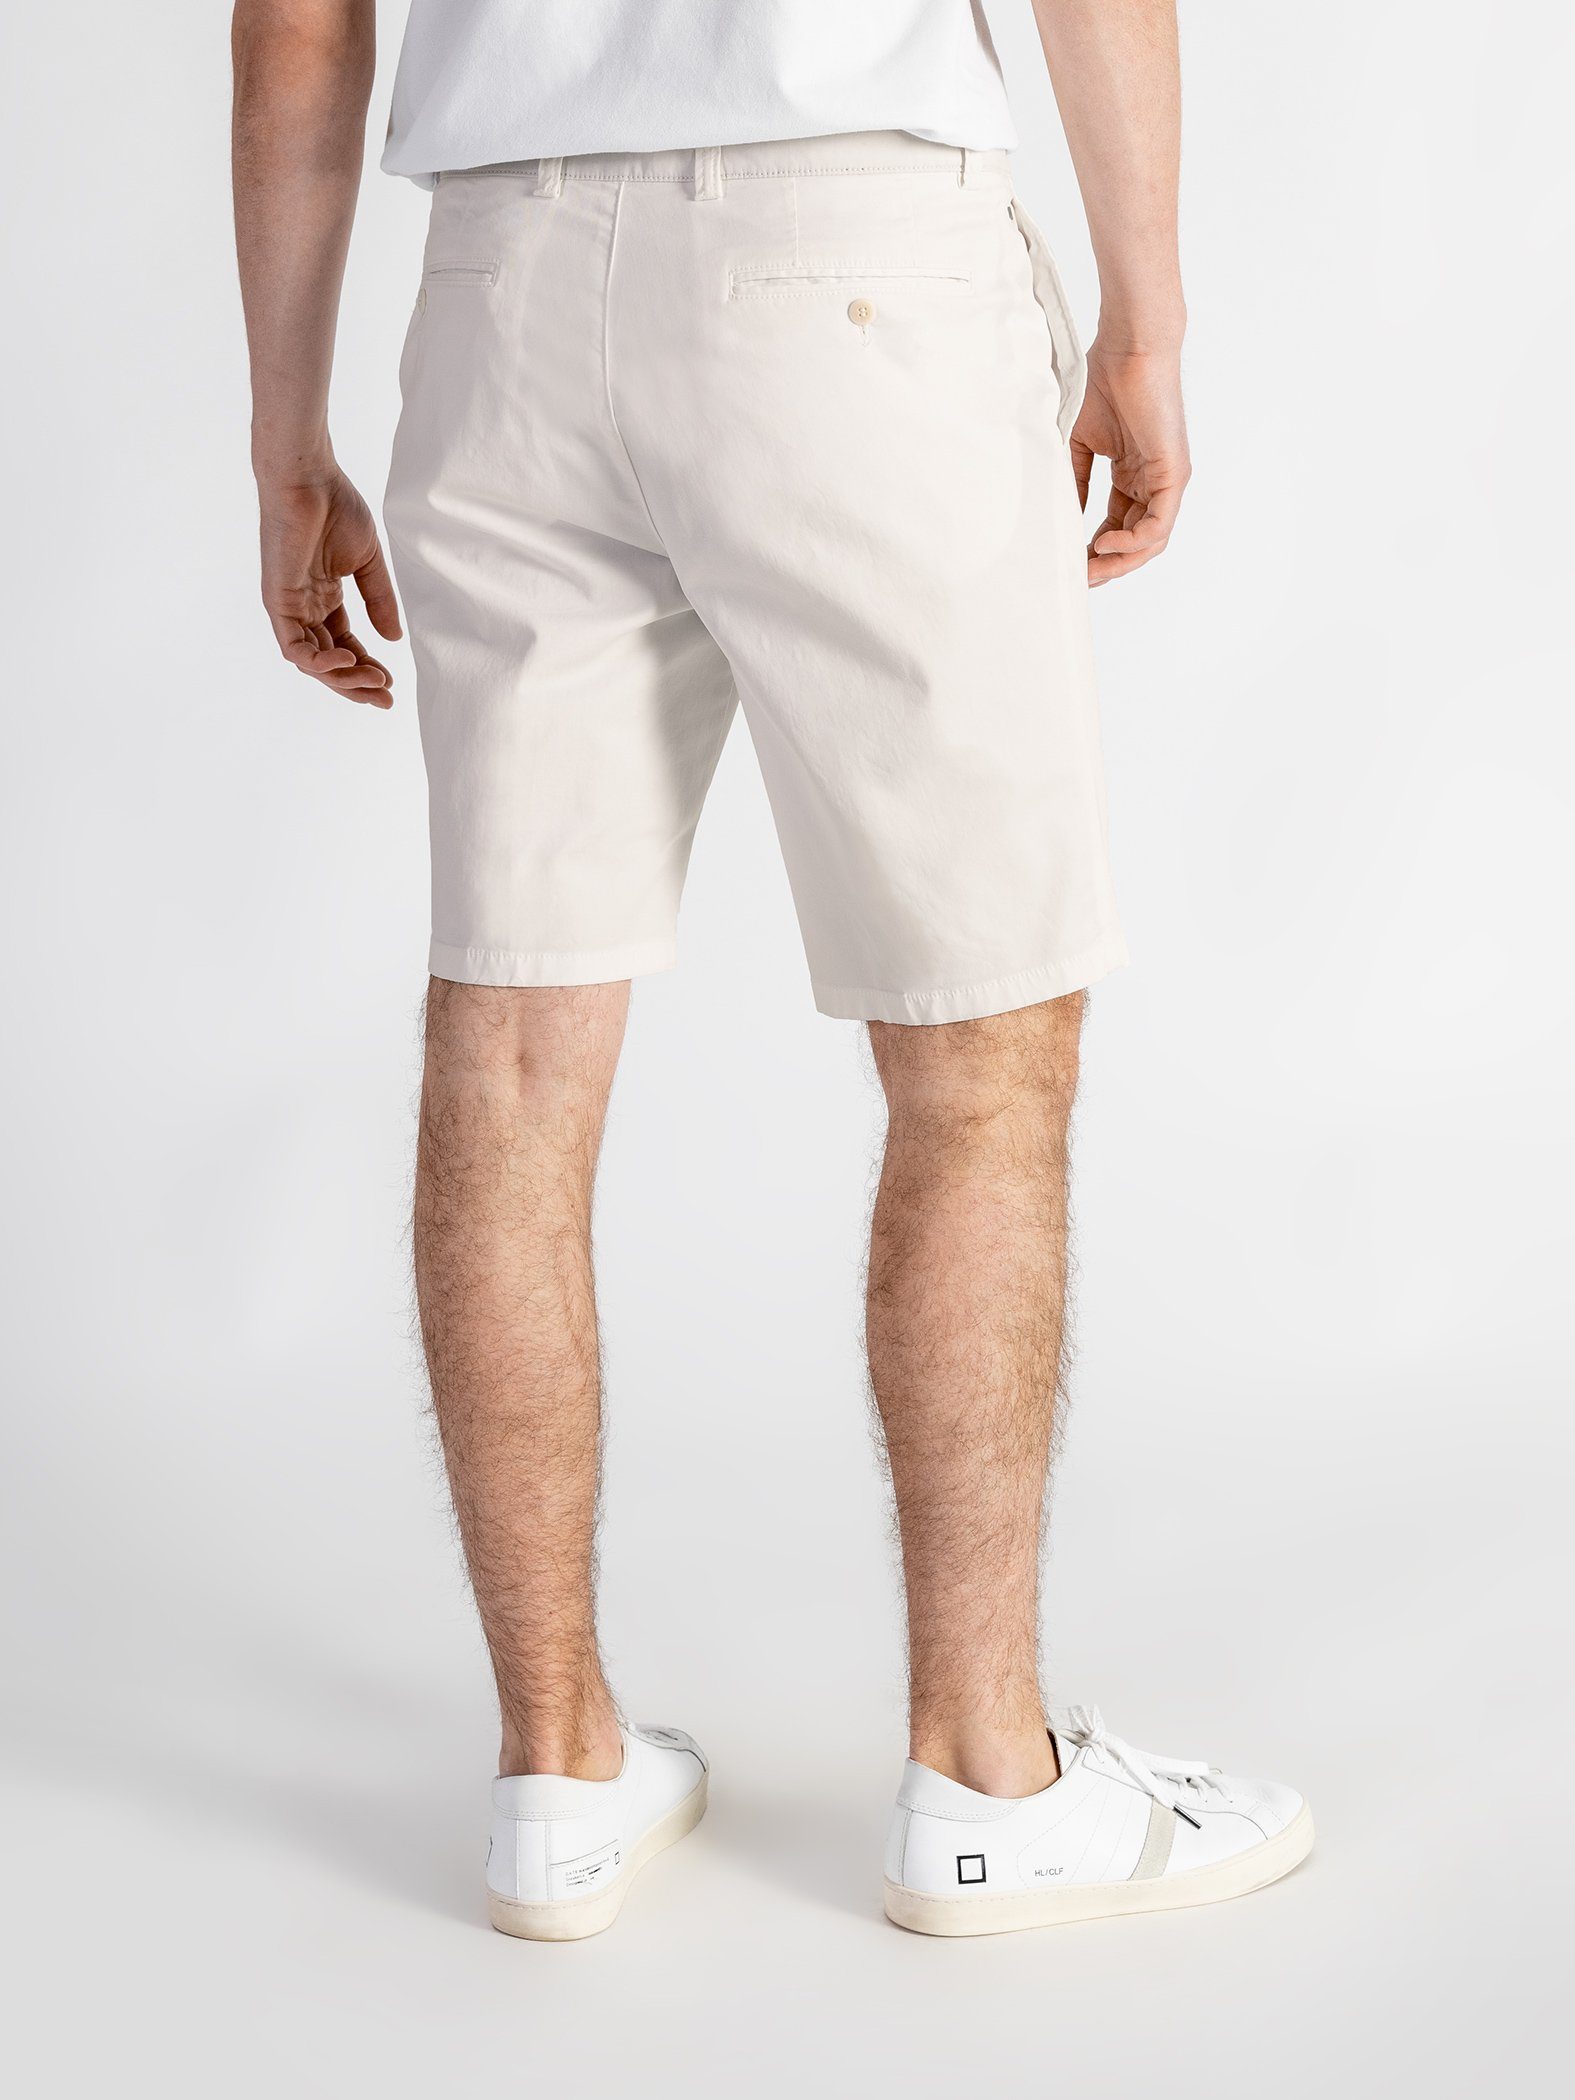 mit hellbeige Shorts Shorts TwoMates GOTS-zertifiziert Bund, elastischem Farbauswahl,